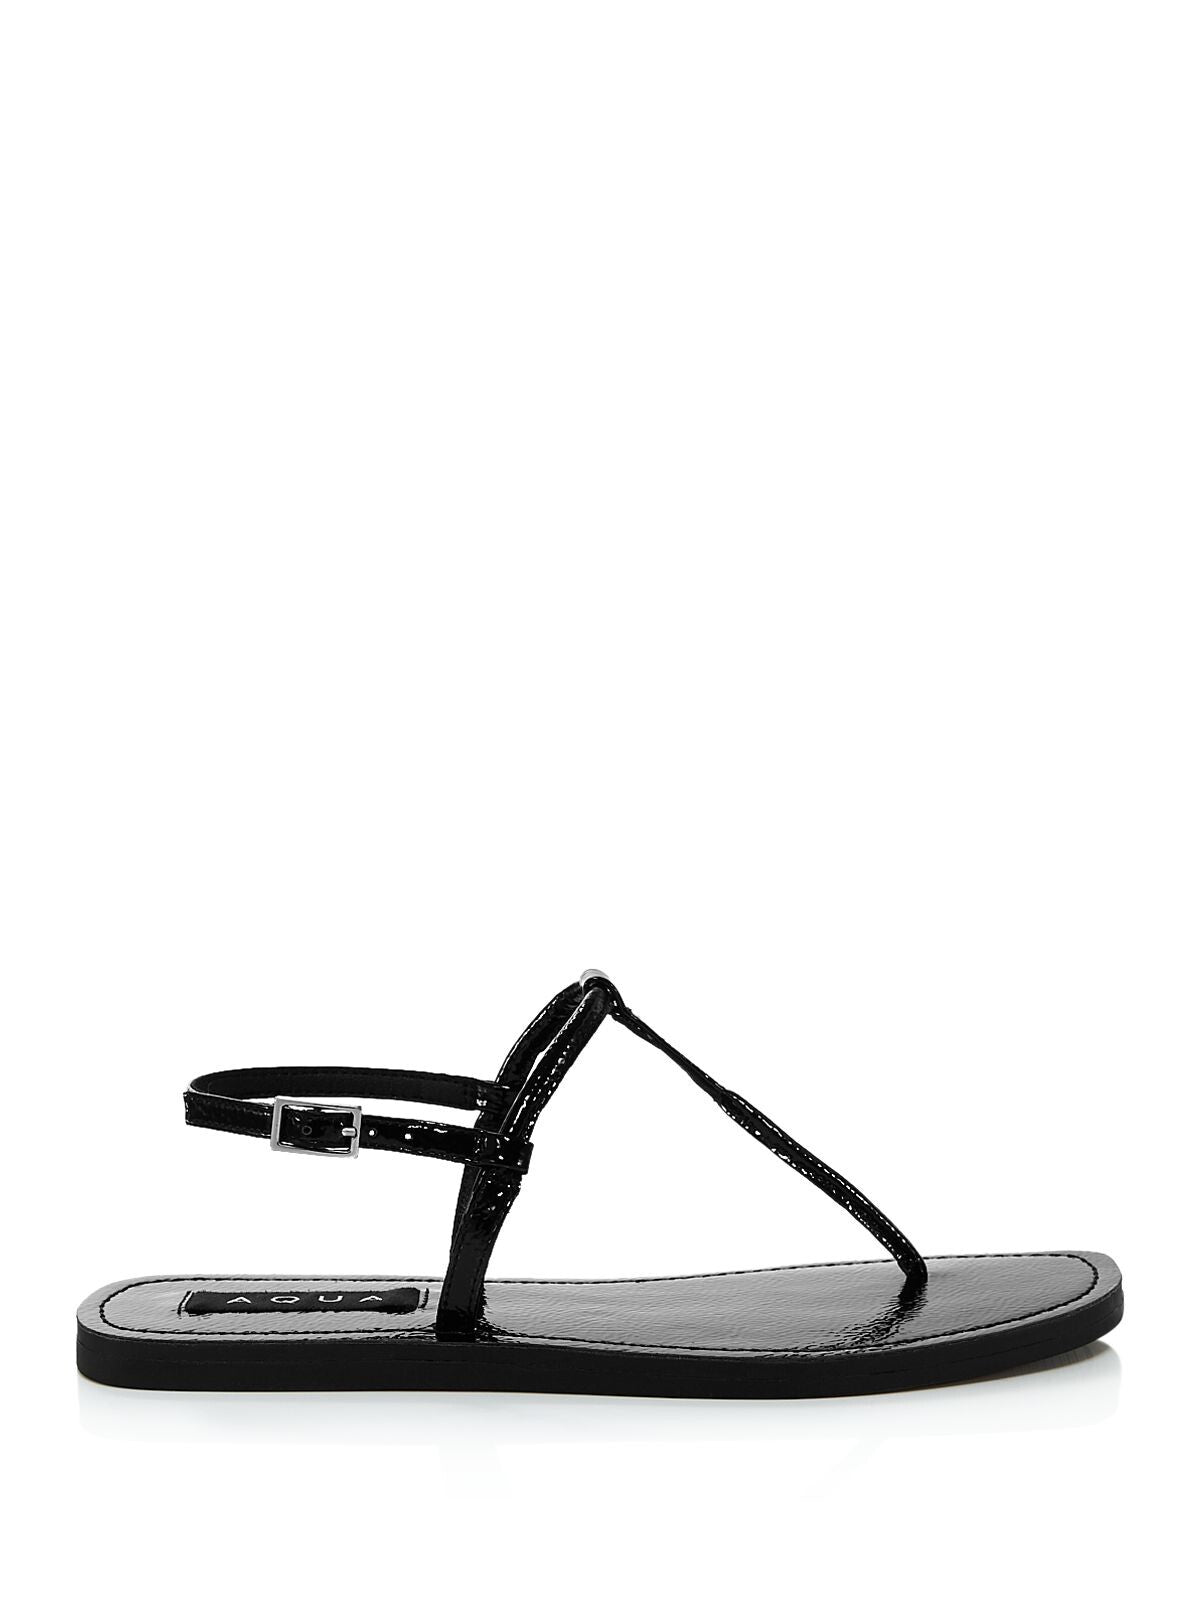 AQUA Womens Black T-Strap Zen Round Toe Buckle Thong Sandals Shoes 6.5 M